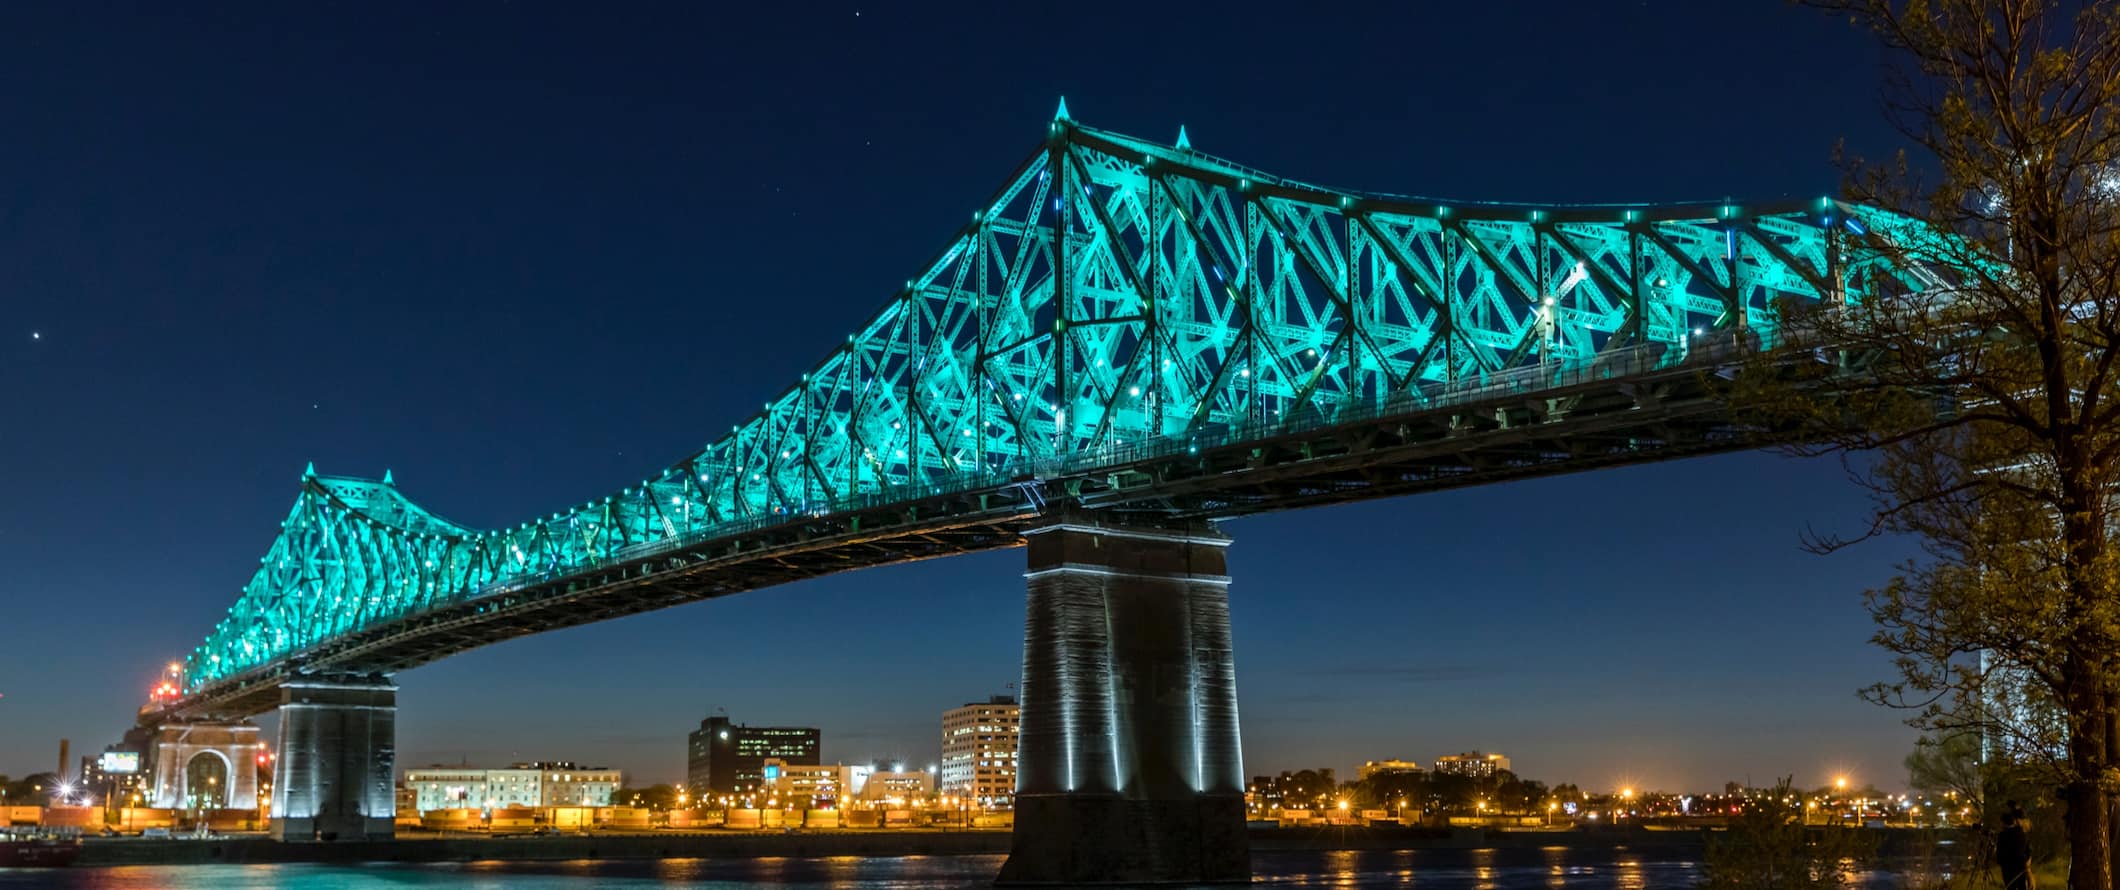 Cartier Iconic Bridge em Montreal, Canadá, iluminou à noite